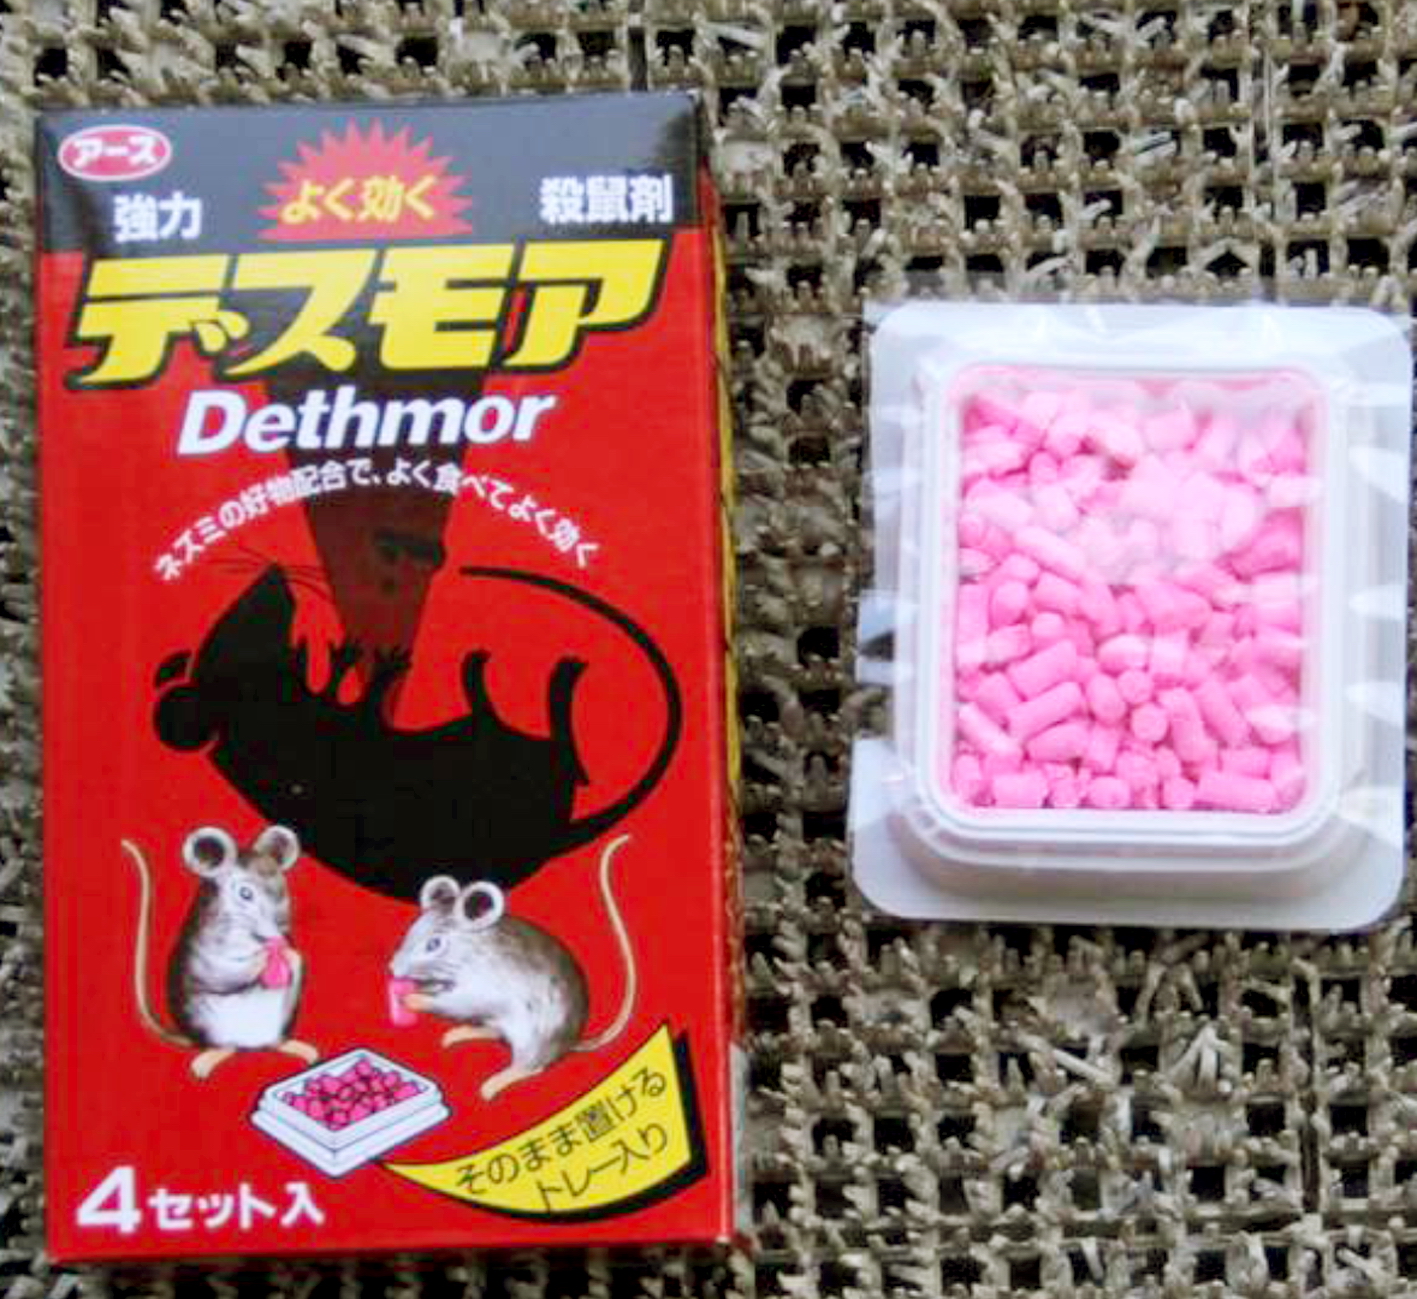 Thuốc diệt chuột hình viên kẹo được bán phổ biến tại TP.HCM - ảnh: thanh hoa